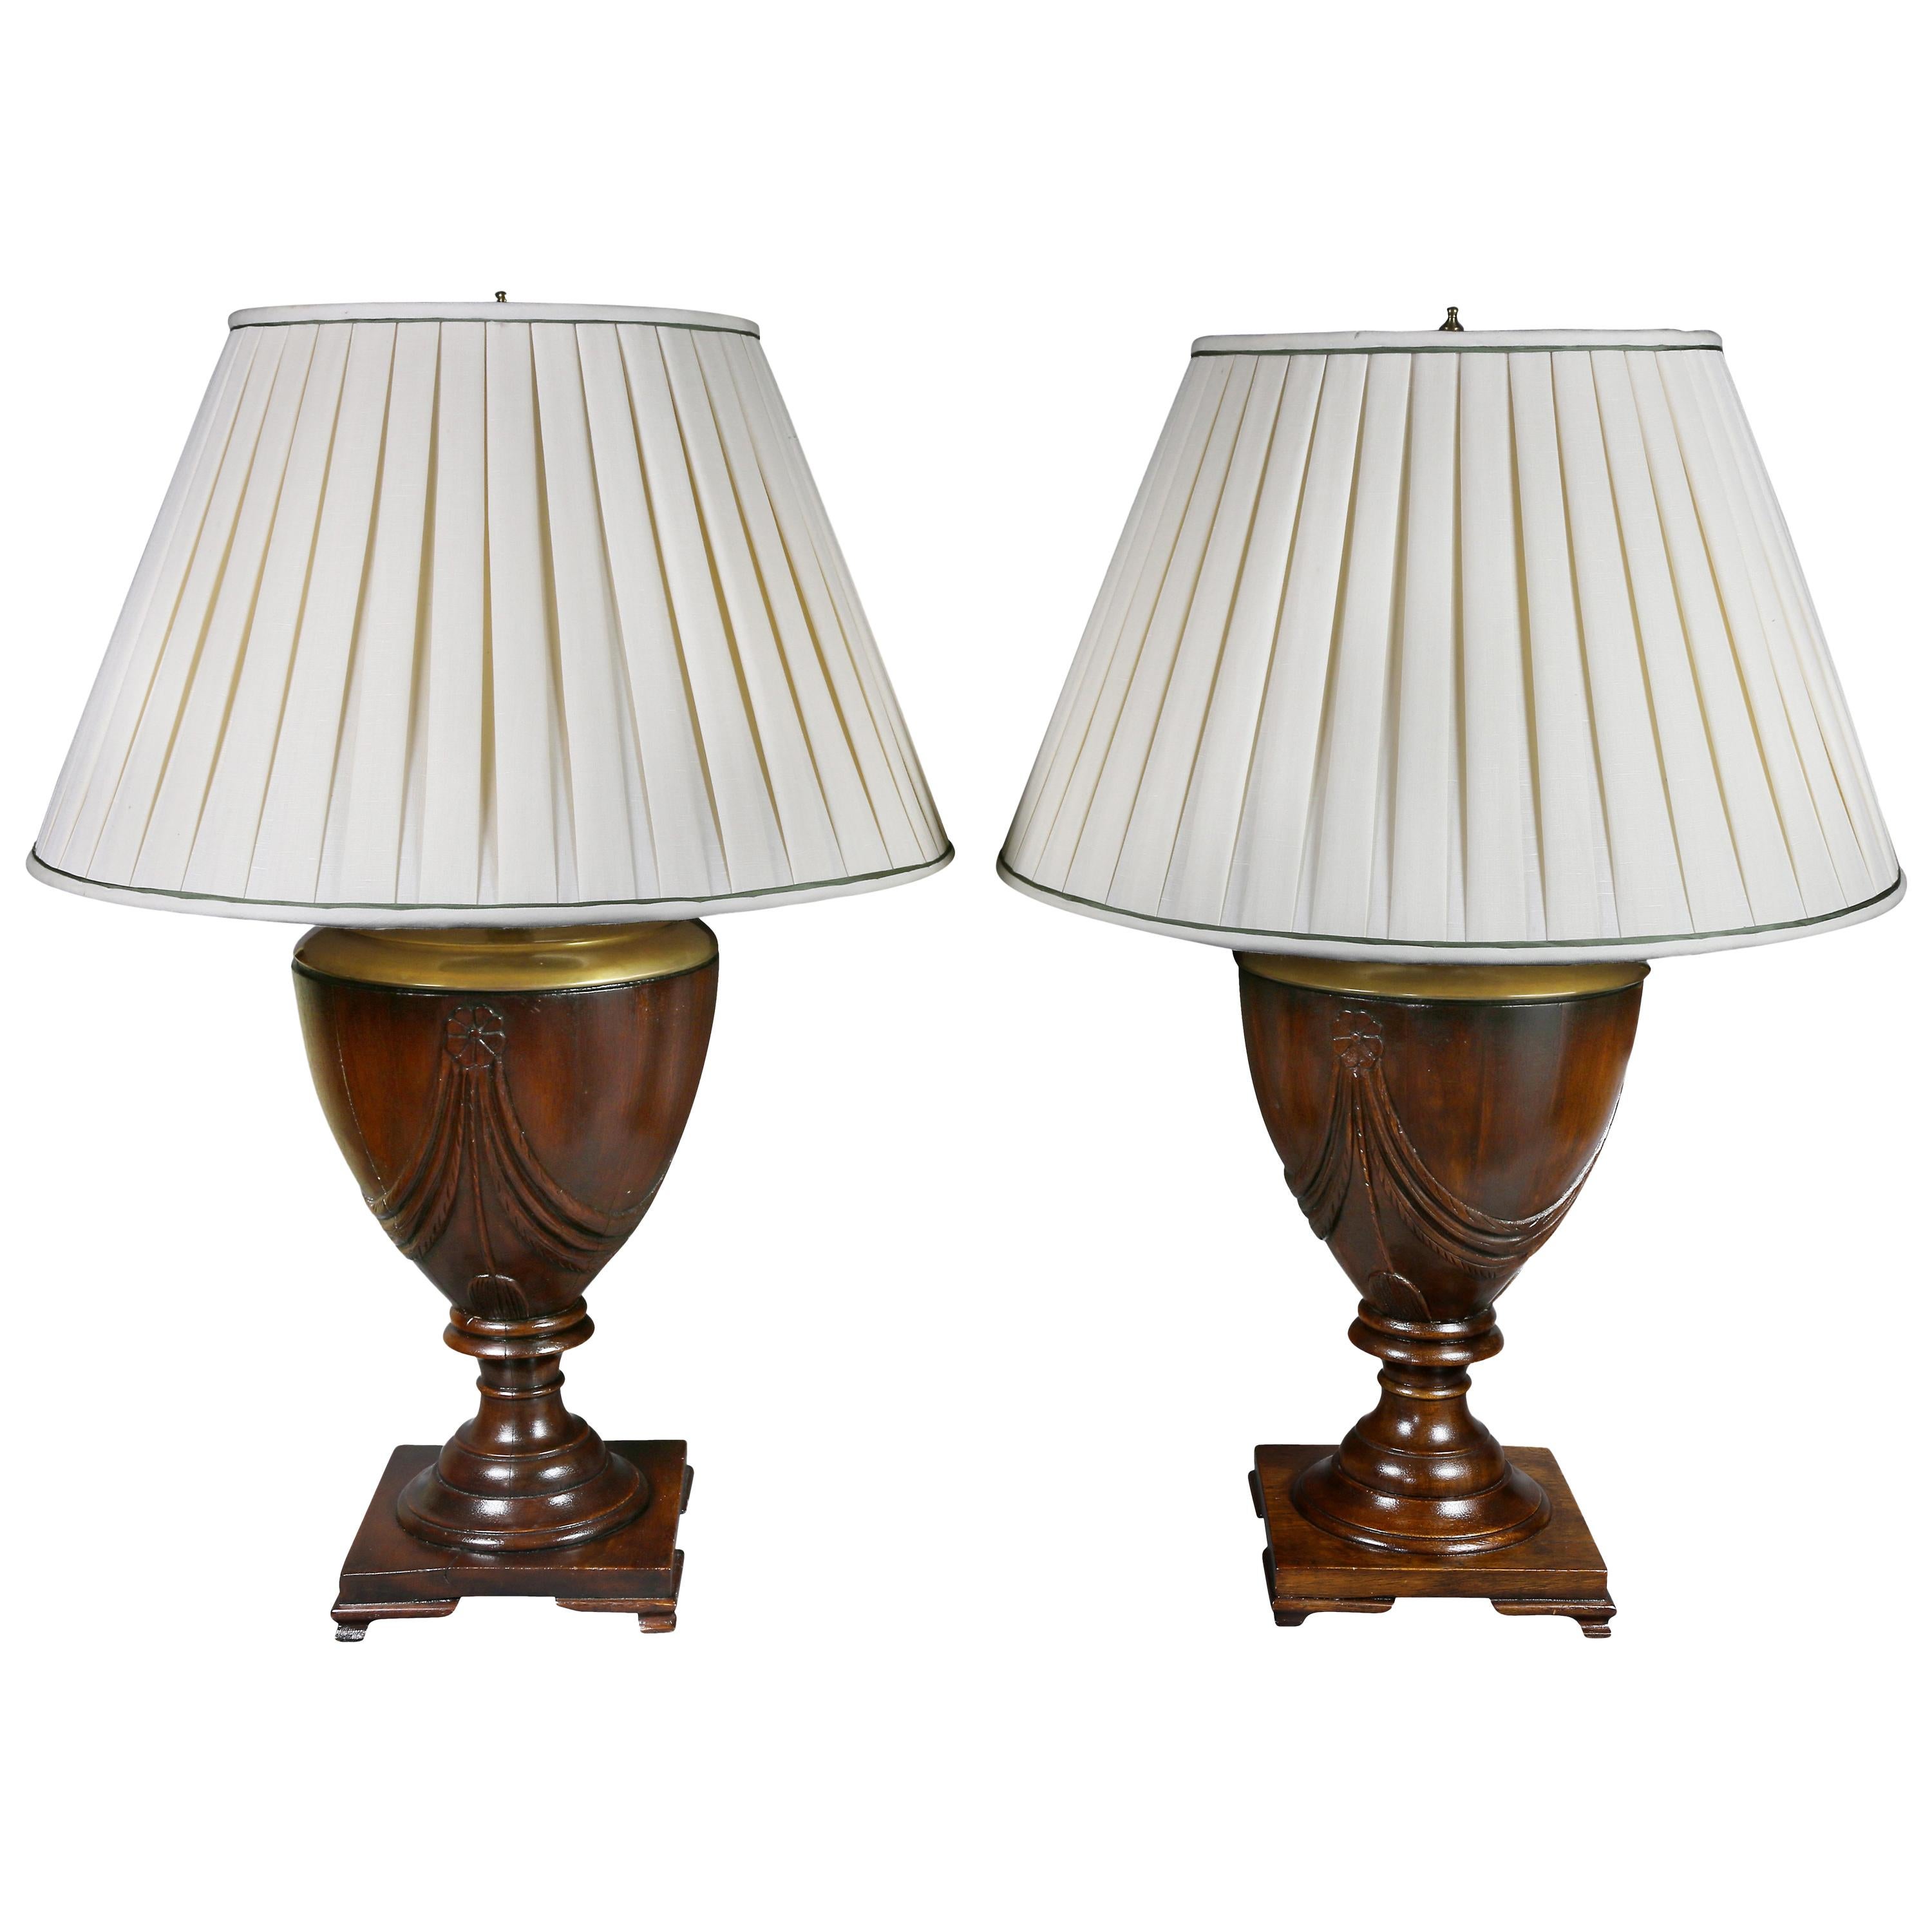 Pair of Georgian Style Mahogany Table Lamps